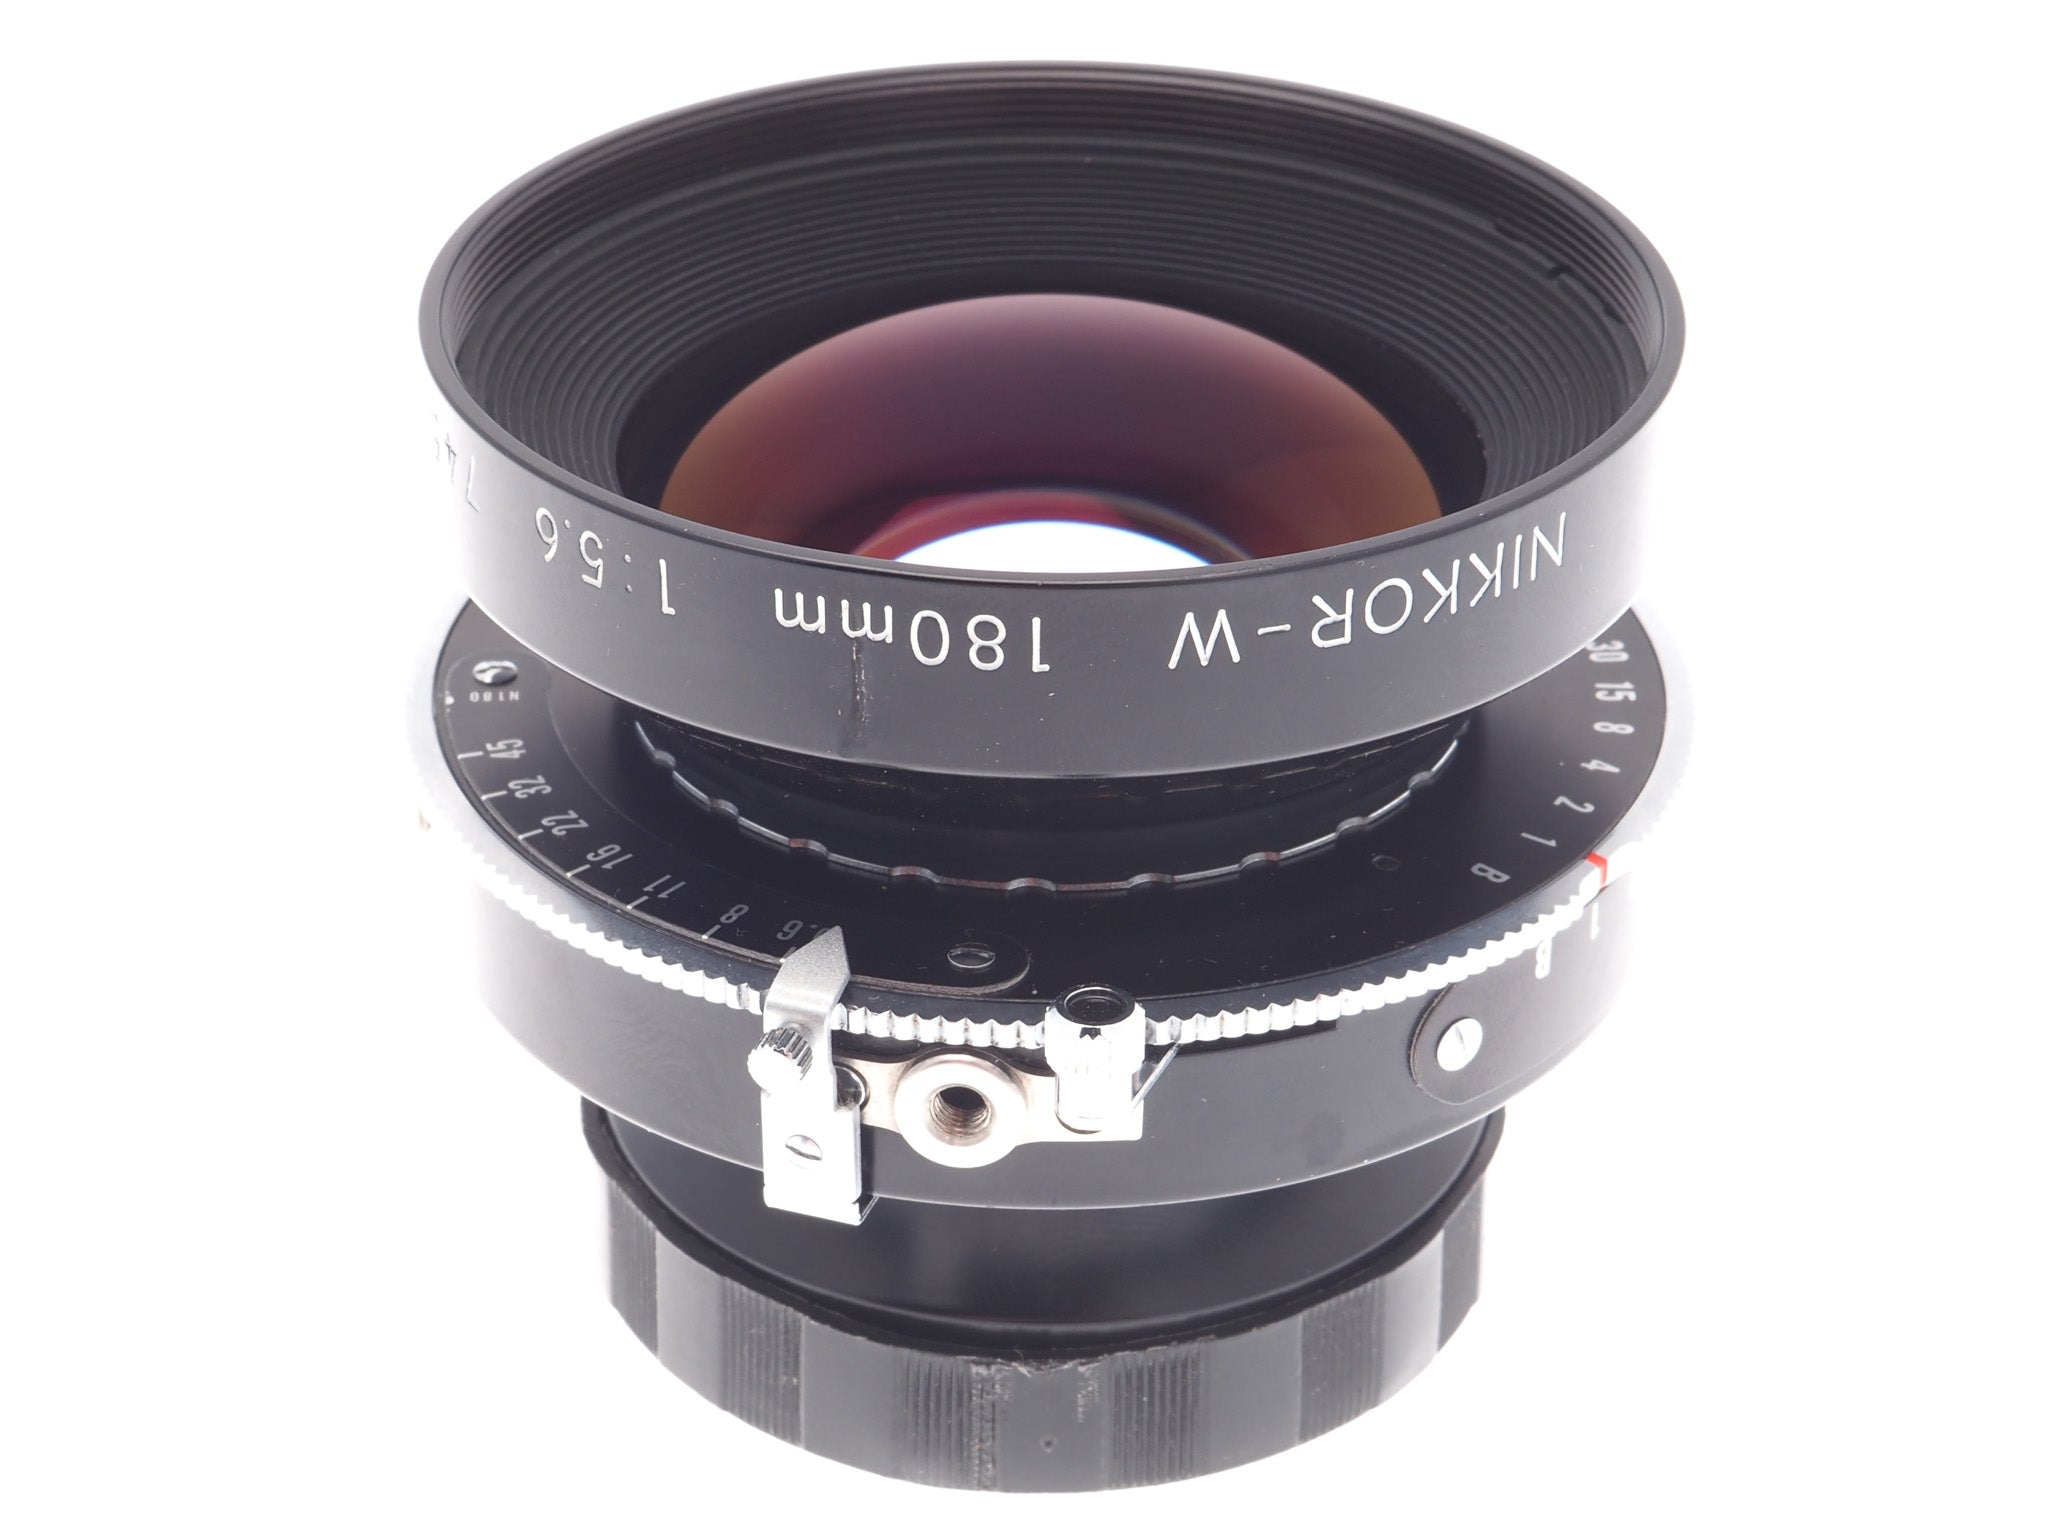 Nikon 180mm f5.6 Nikkor-W (Shutter) - Lens